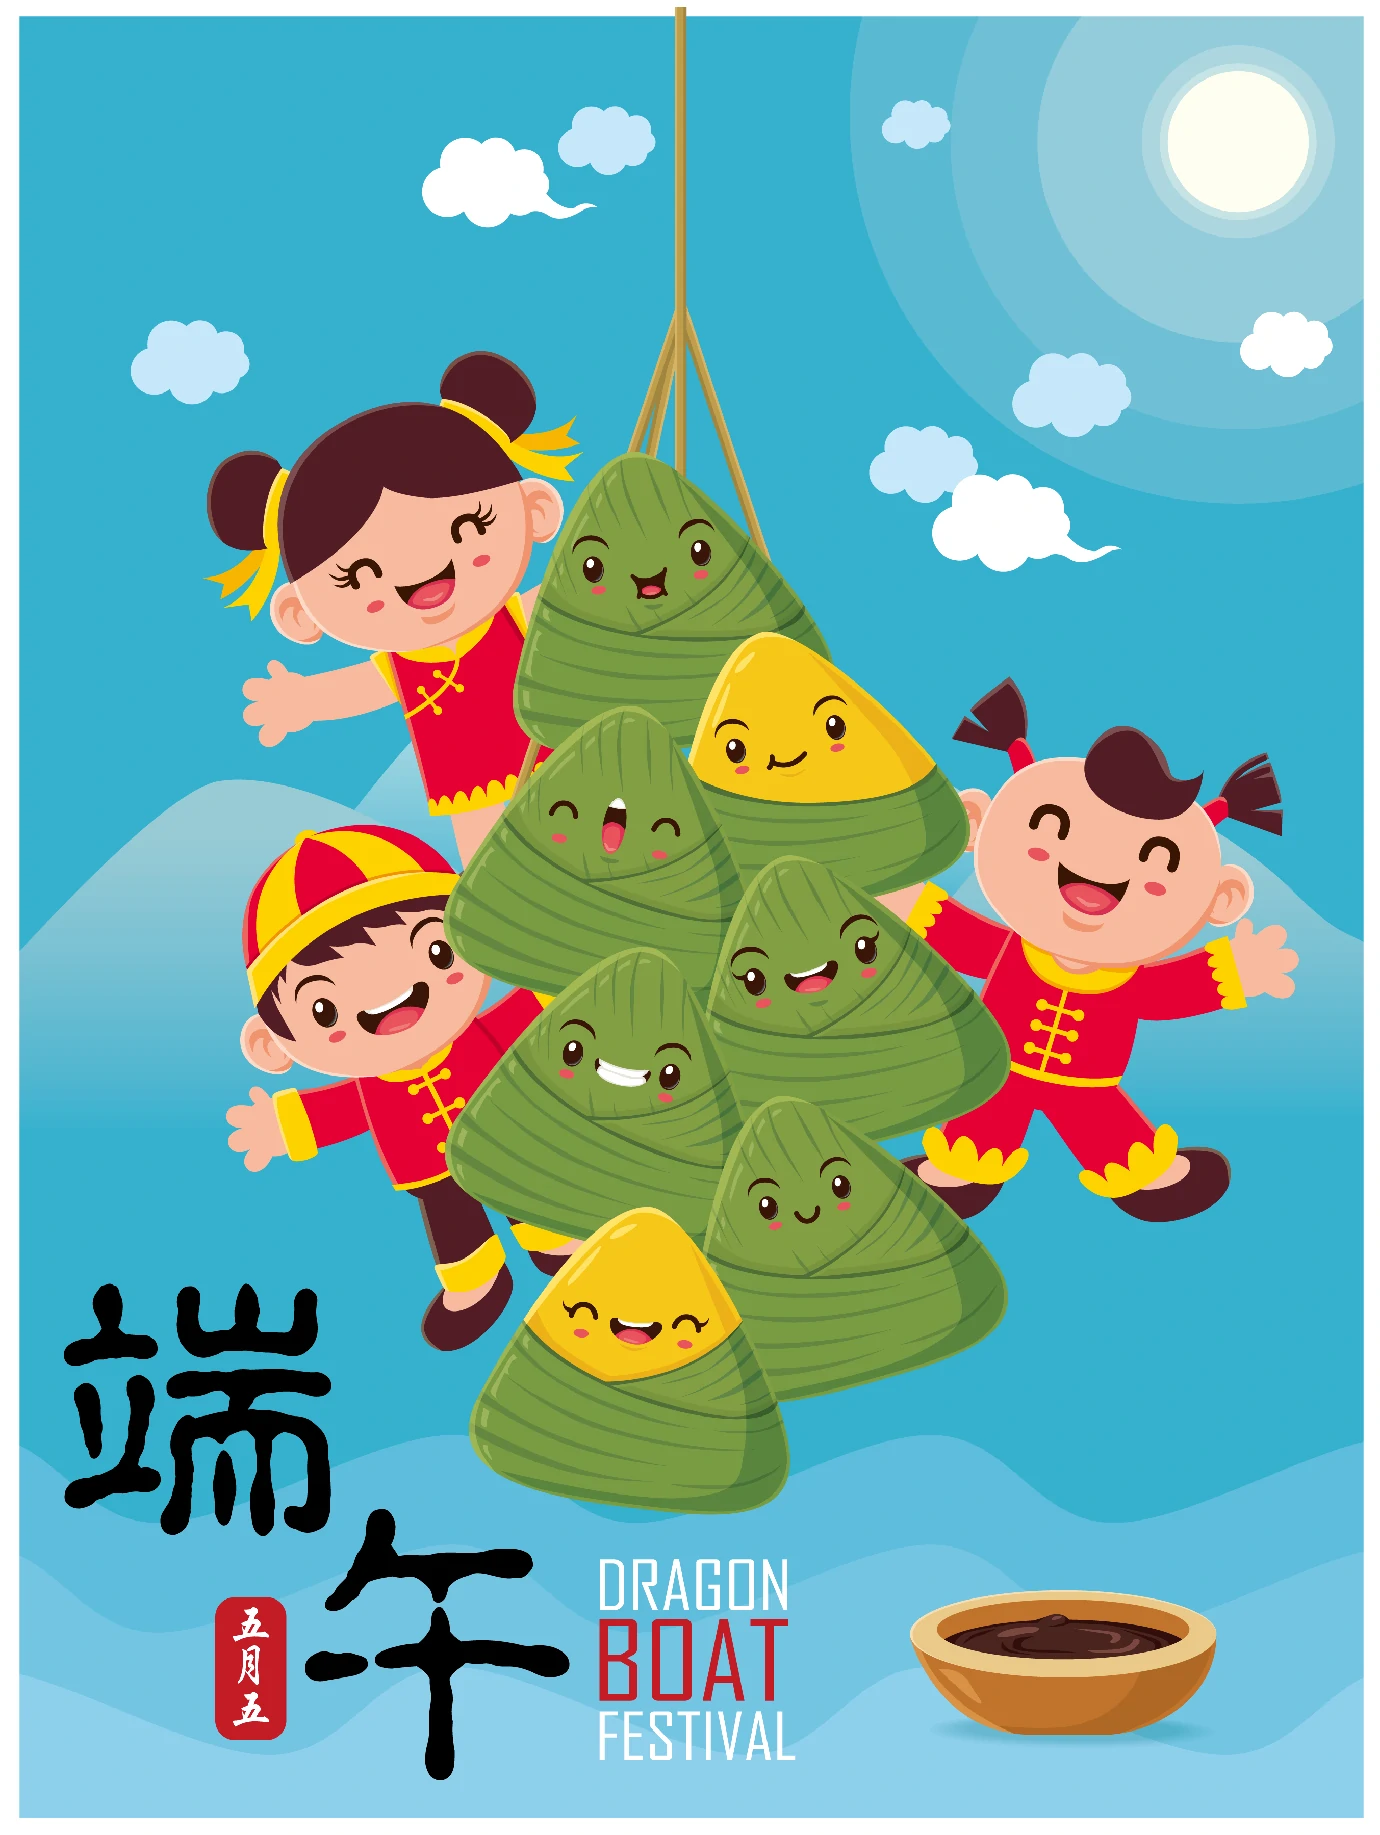 中国传统节日卡通手绘端午节赛龙舟粽子插画海报AI矢量设计素材【046】